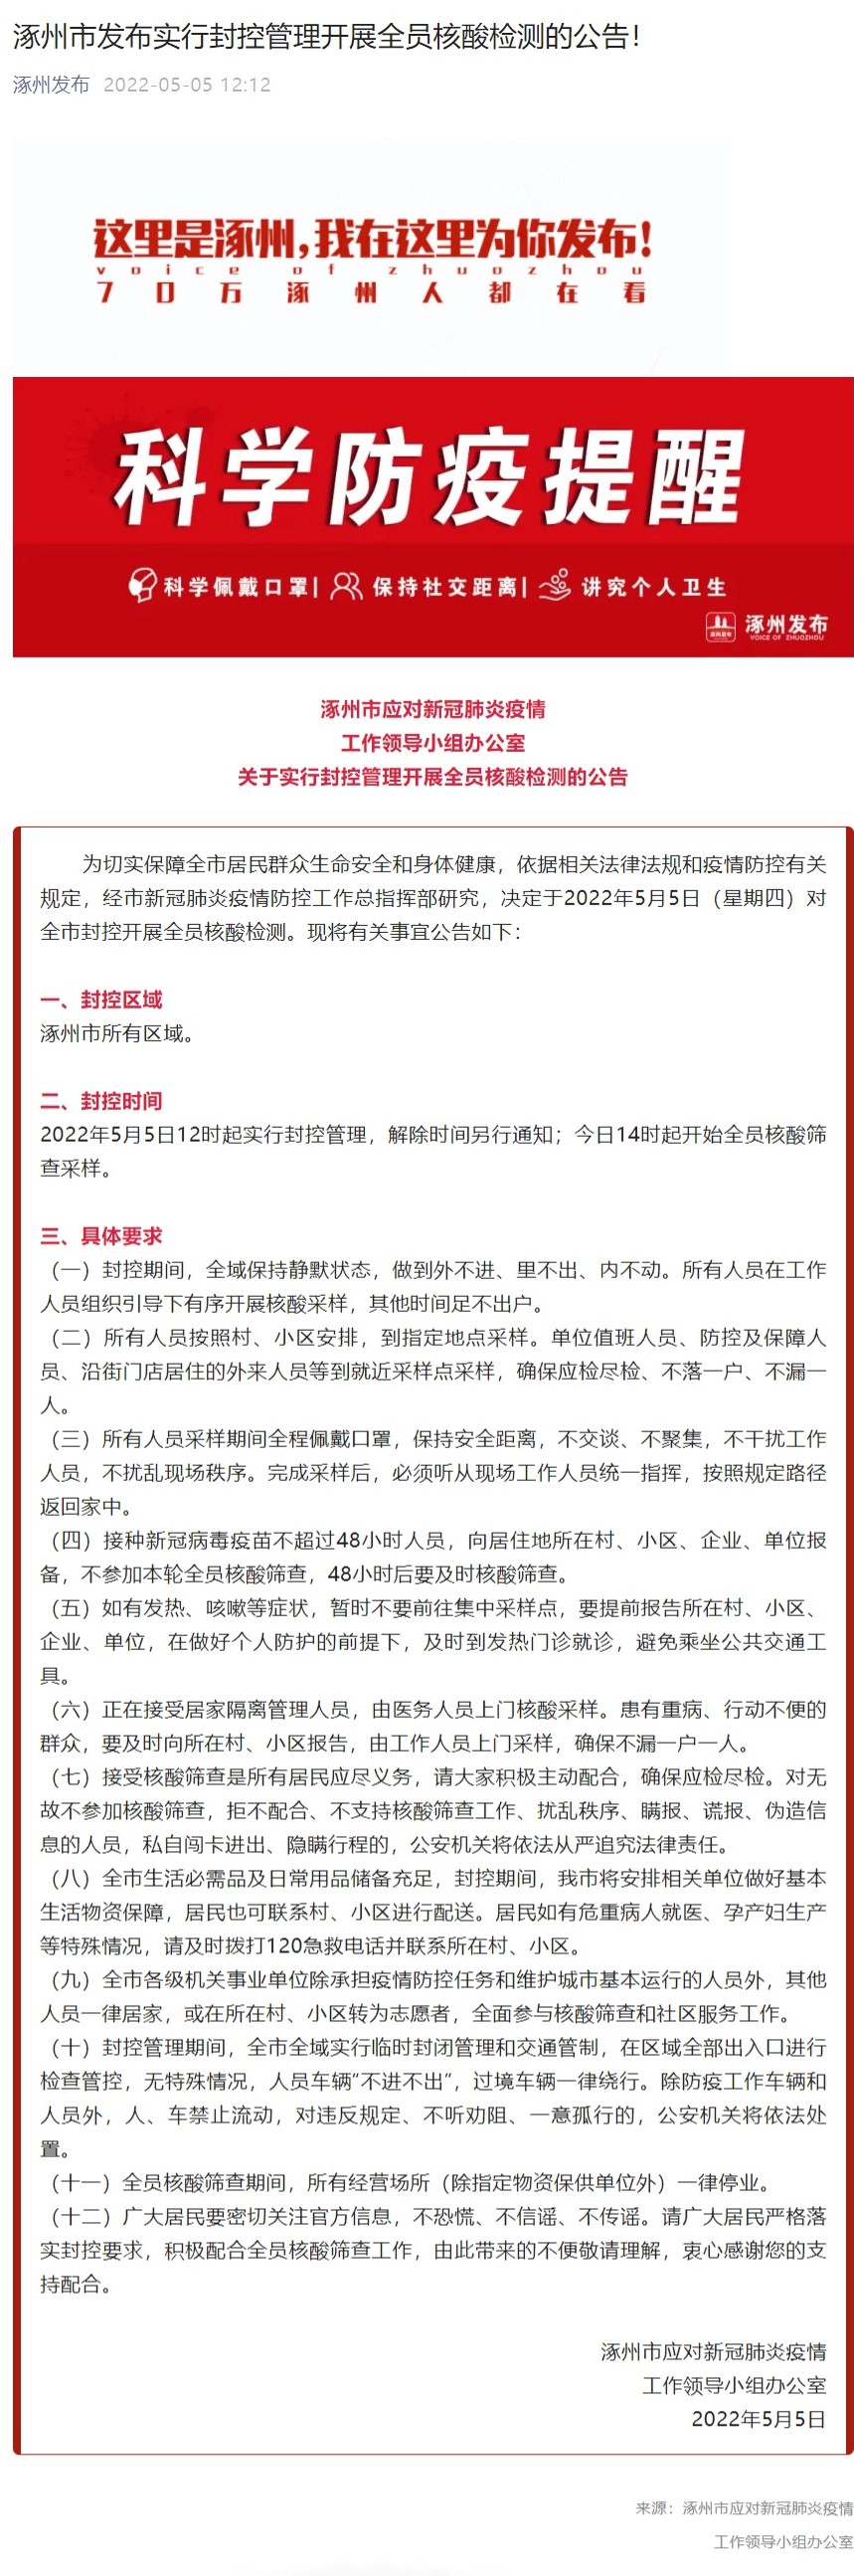 河北涿州：全市于5月5日12时起实行封控管理 14时起全员核酸筛查